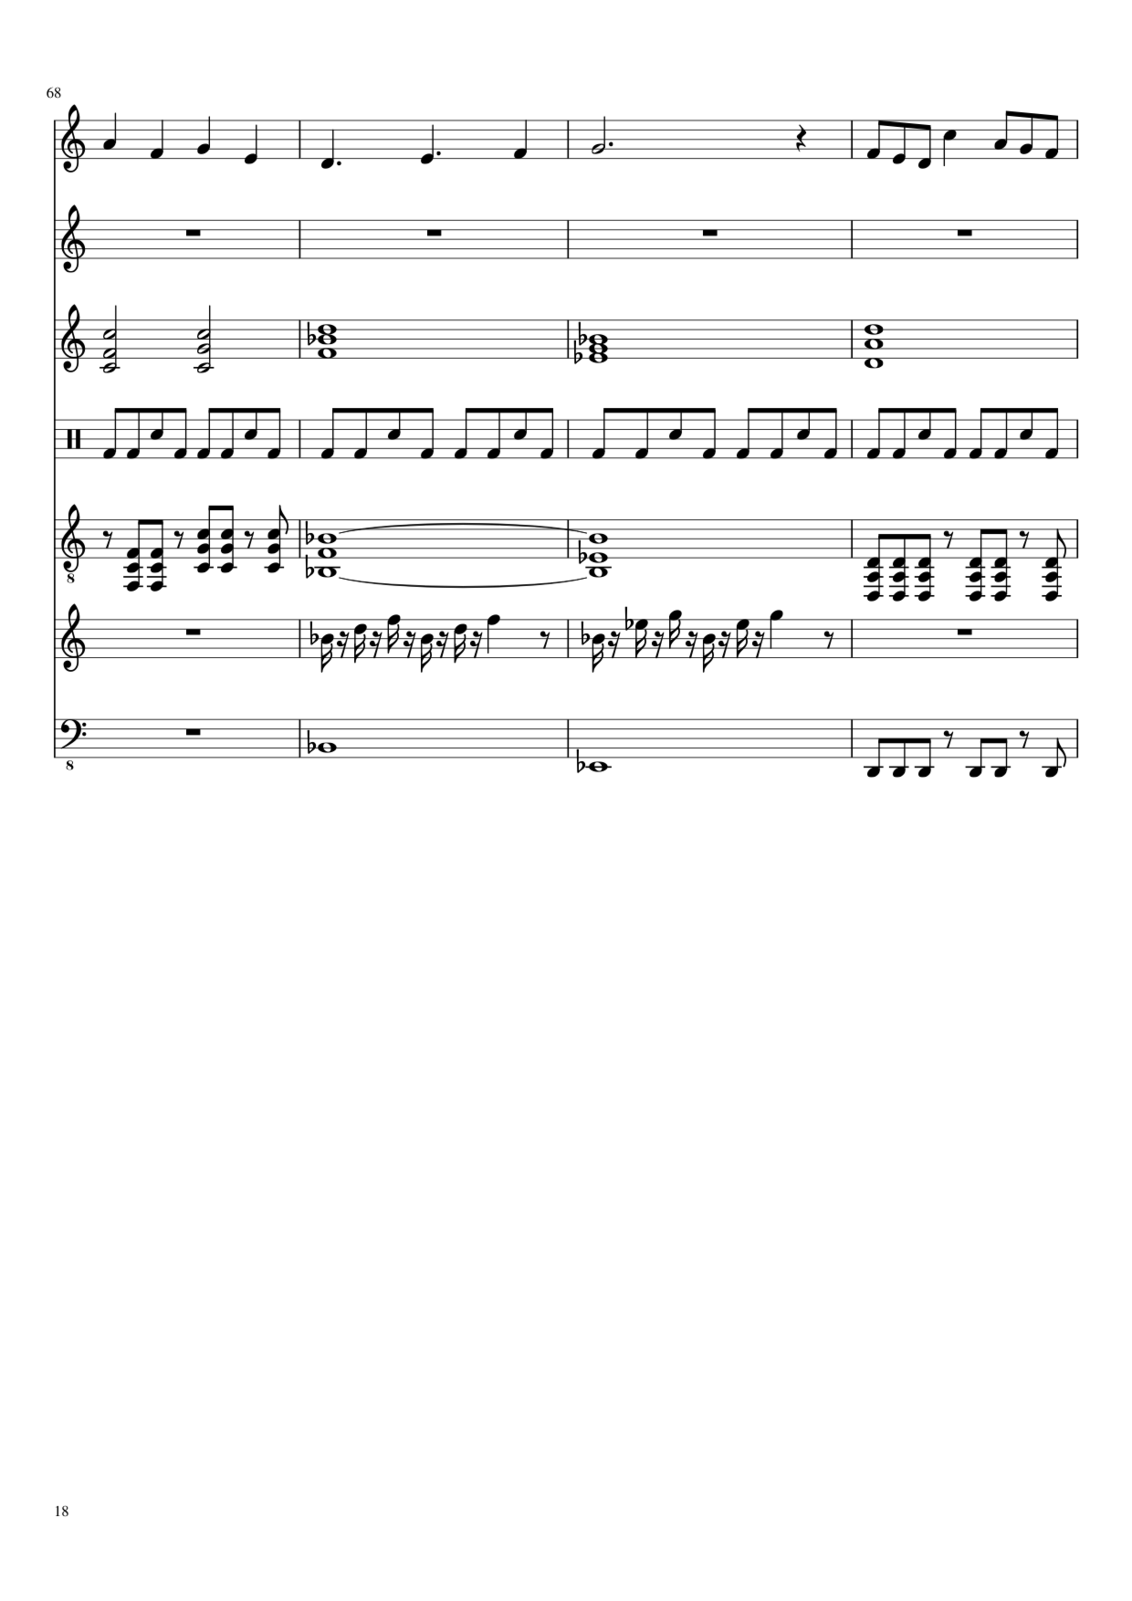 Zvezdnyiy vodoem slide, Image 17